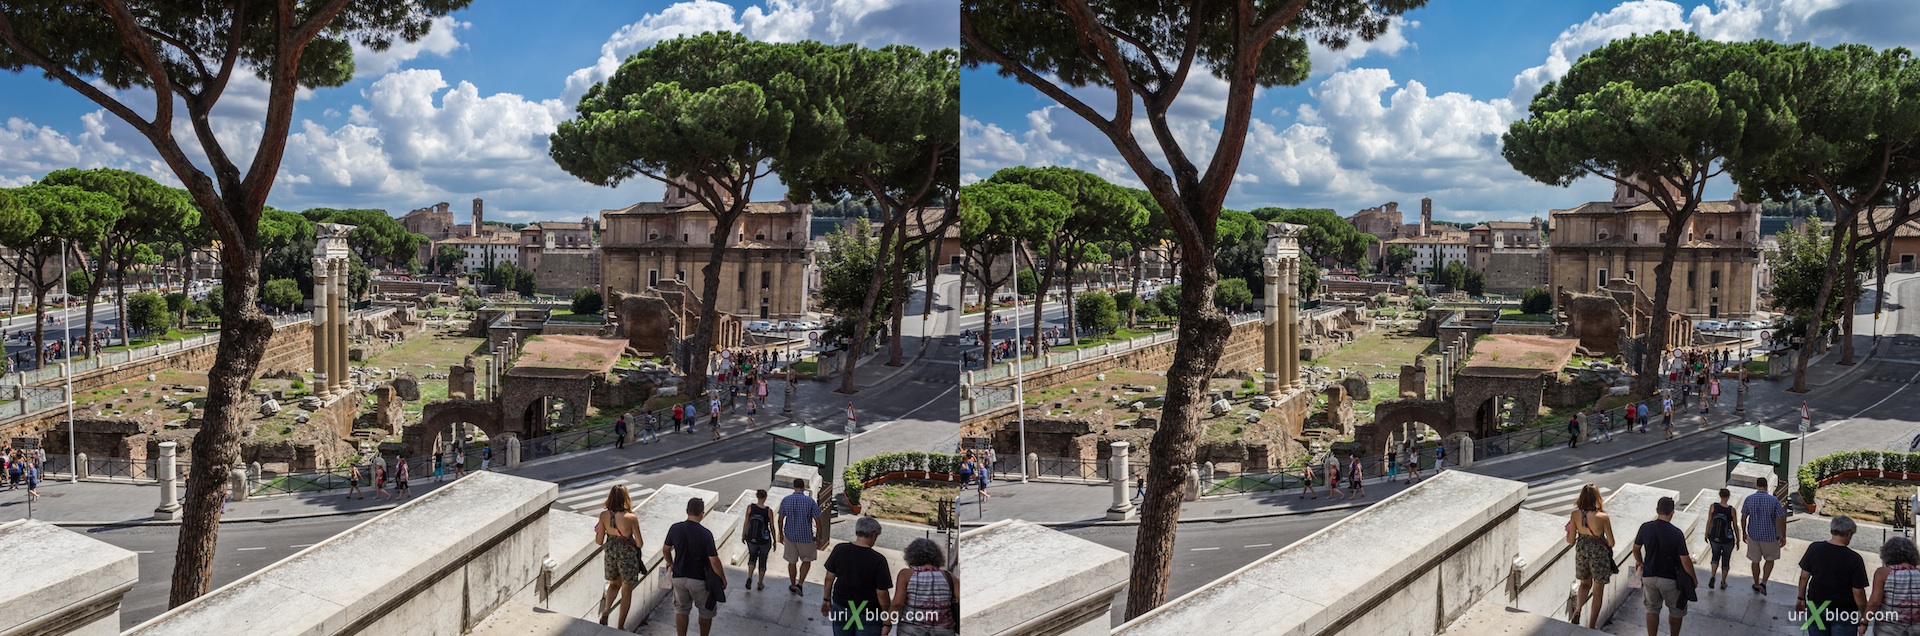 2012, Римский форум, Палатинский холм, город, раскопки, древний Рим, Италия, 3D, перекрёстные стереопары, стерео, стереопара, стереопары